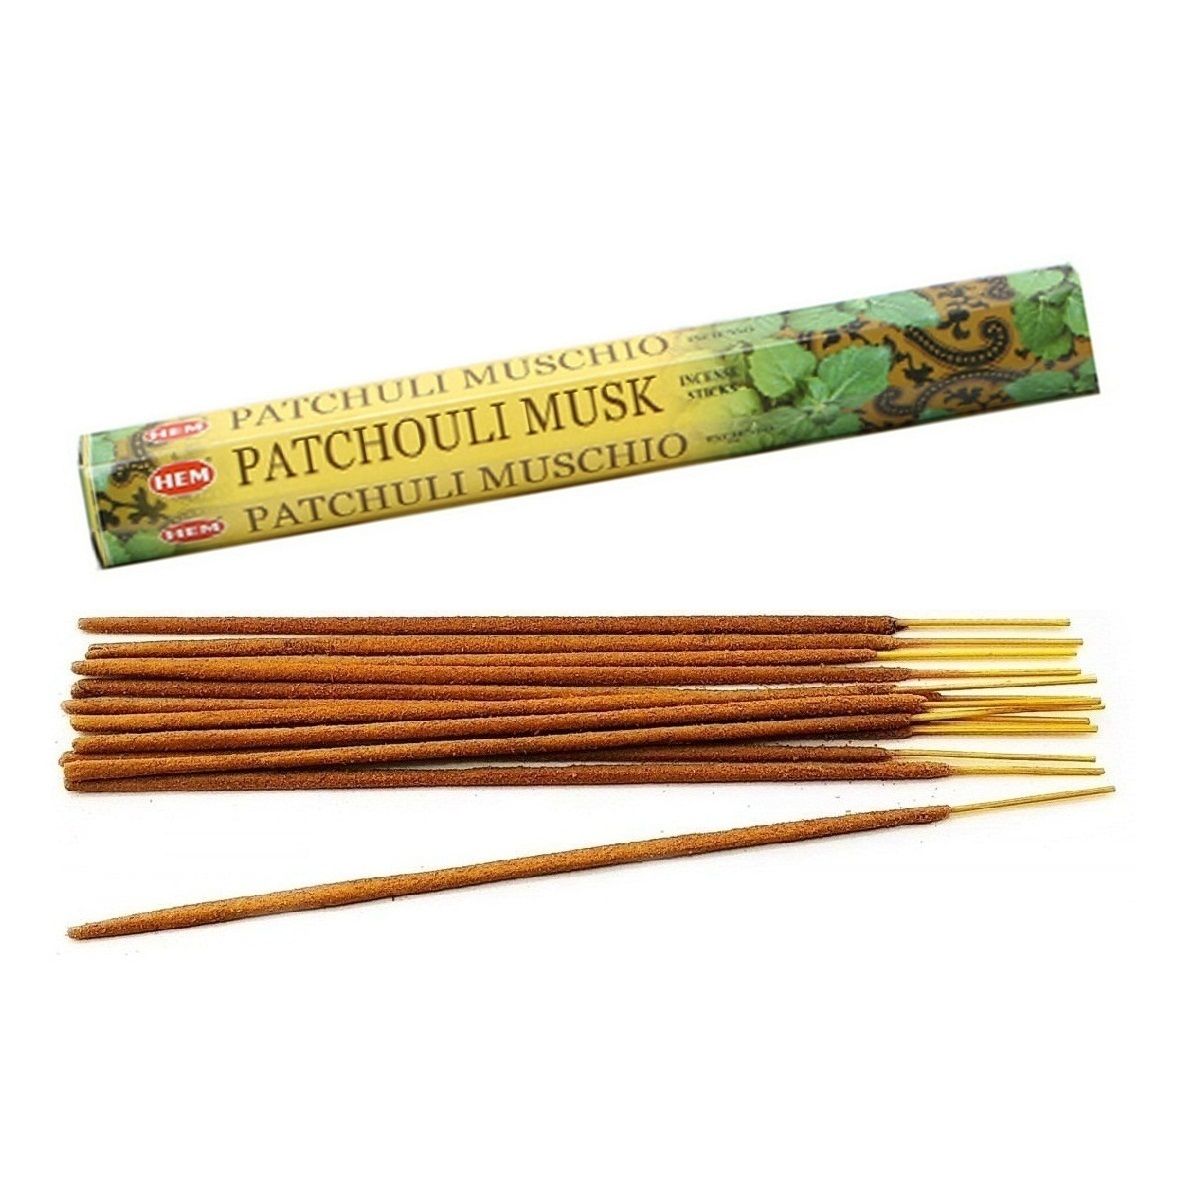 Hem Incense Sticks PATCHOULI MUSK (Благовония ПАЧУЛИ МУСК, Хем), уп. 20 палочек.